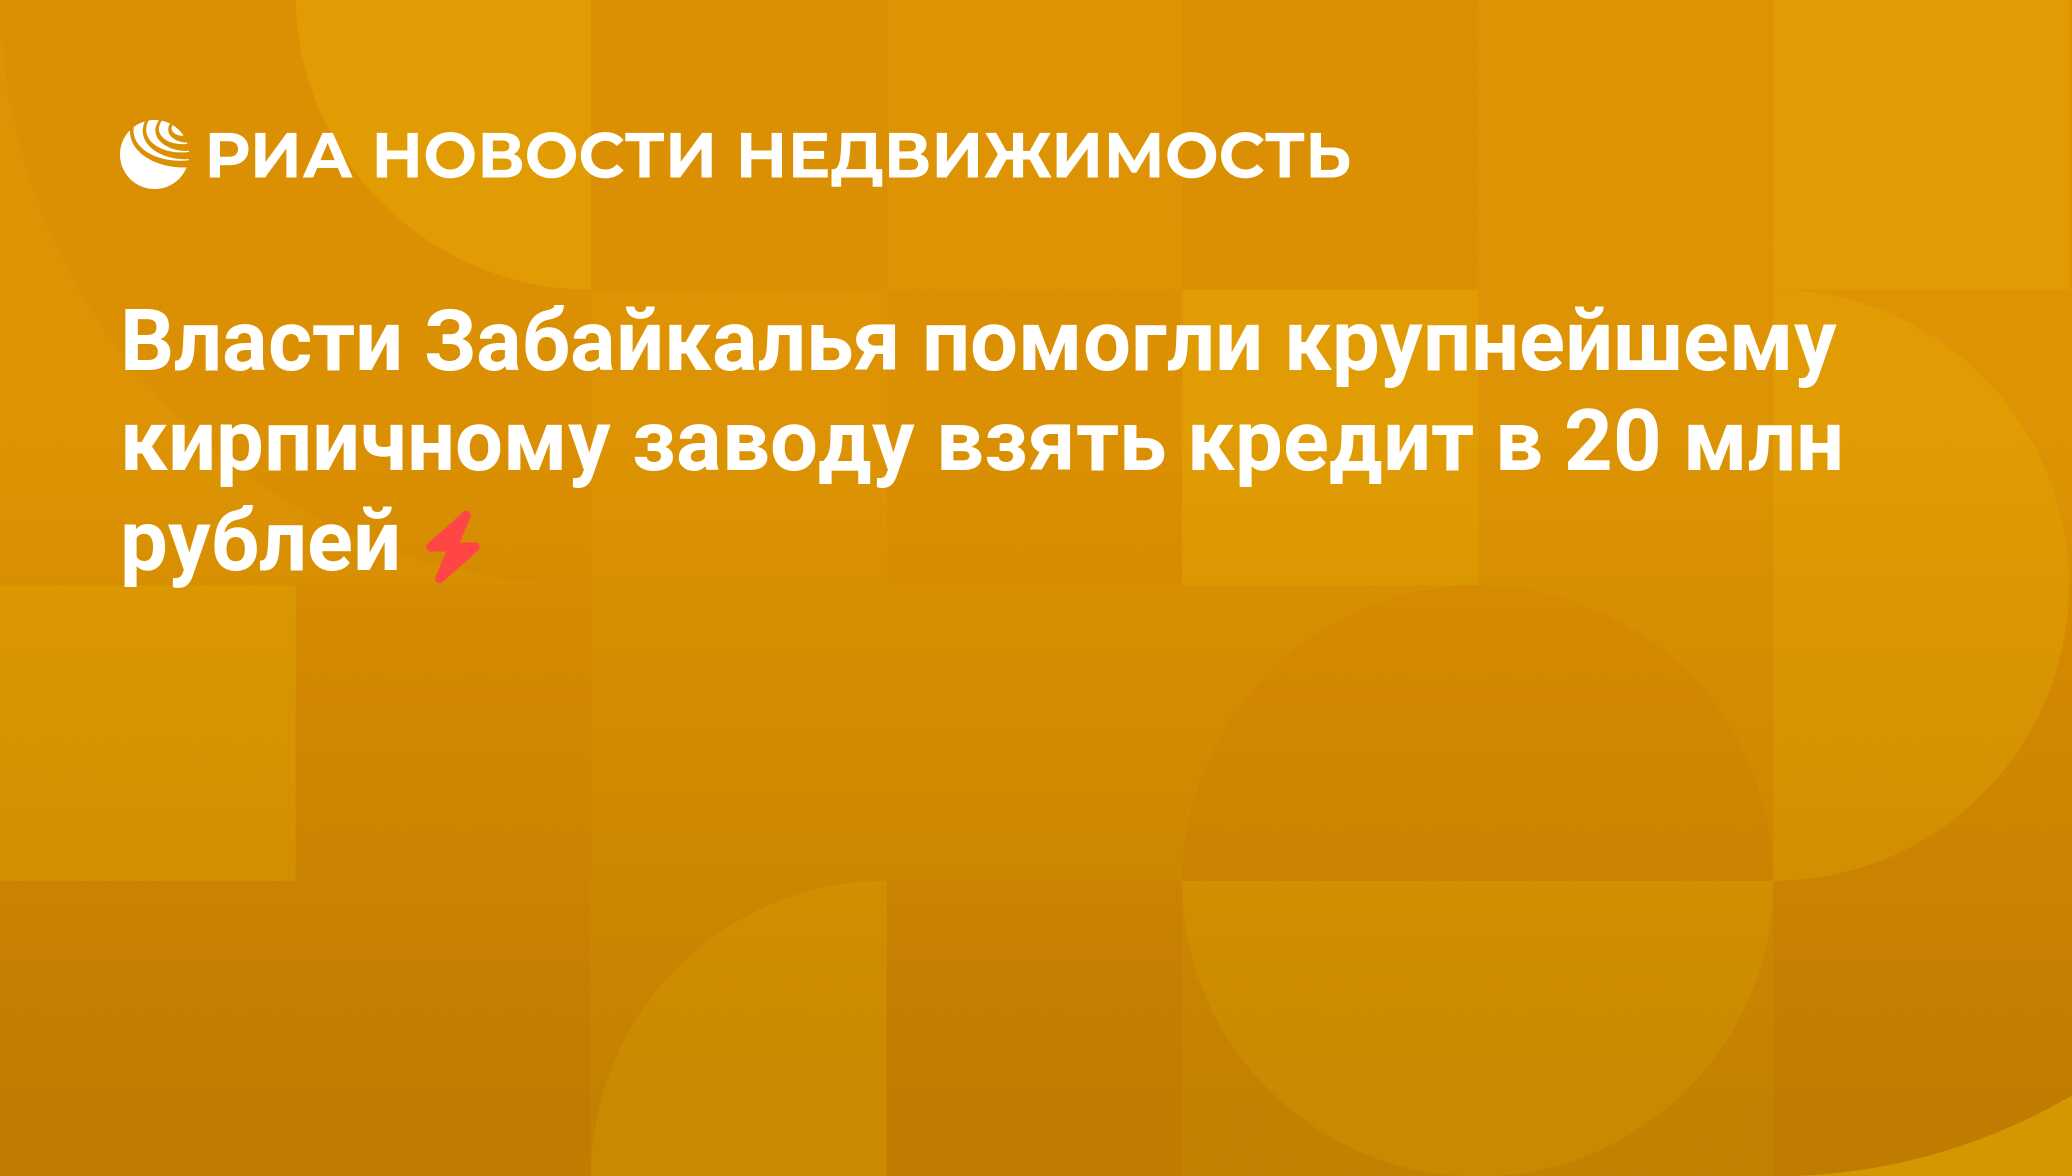 Где взять кредит 20 млн рублей помощь в получении кредита форум